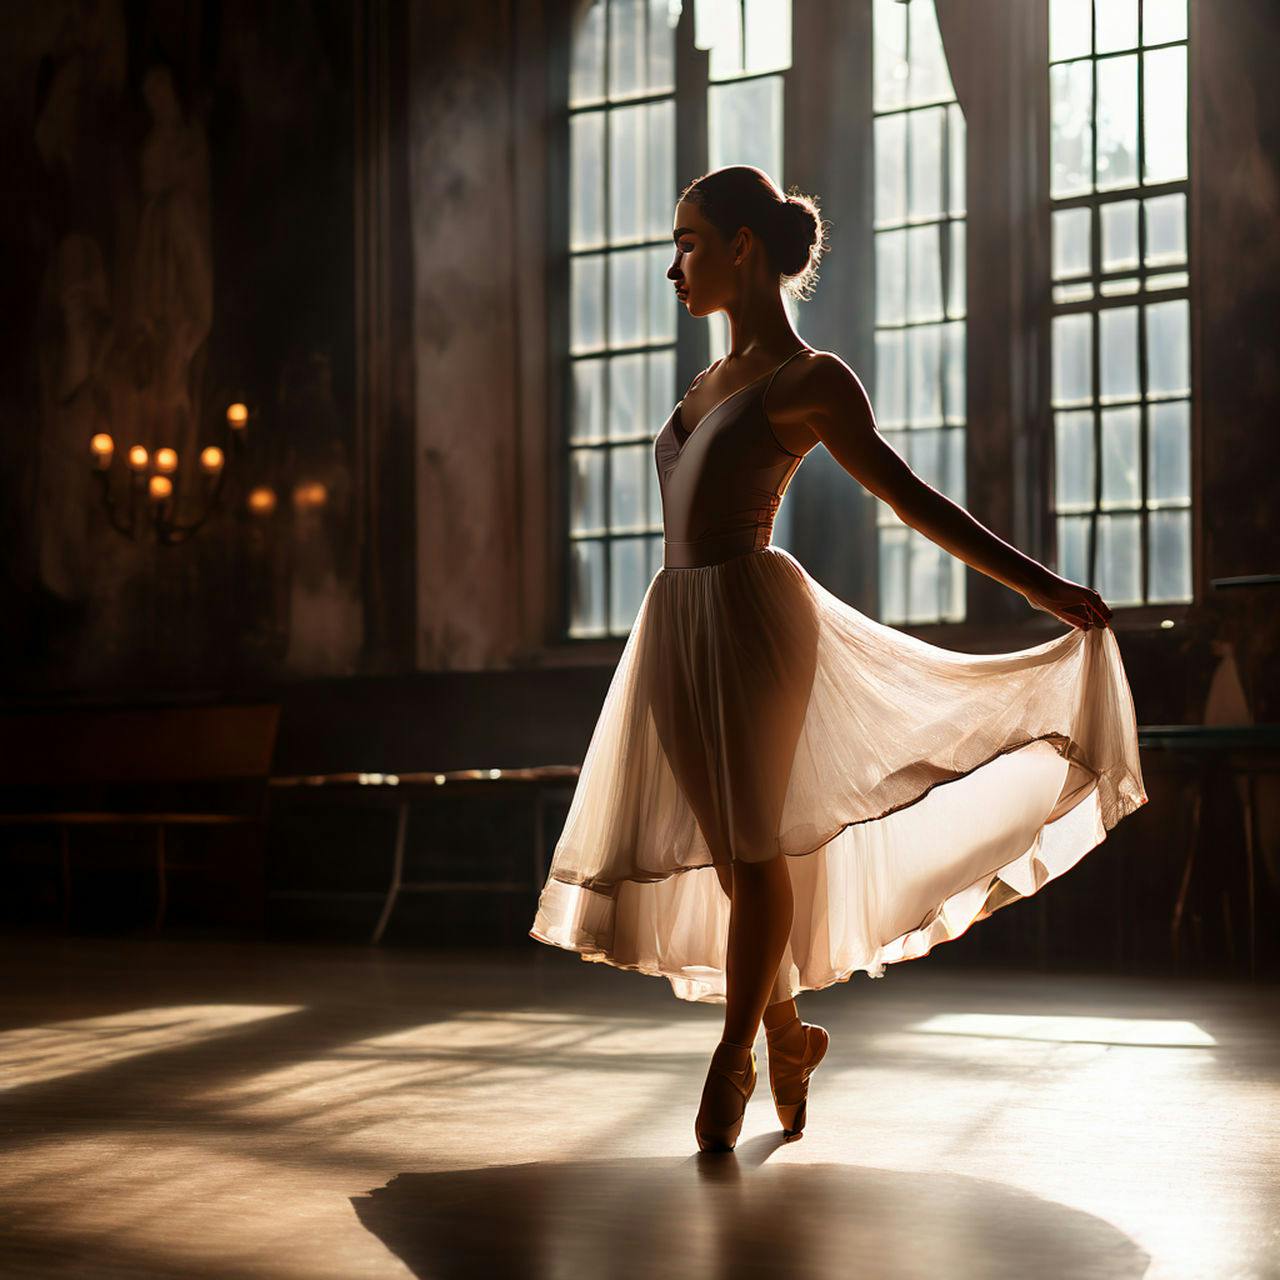 Ballet Dancer Practicing in a Serene Studio